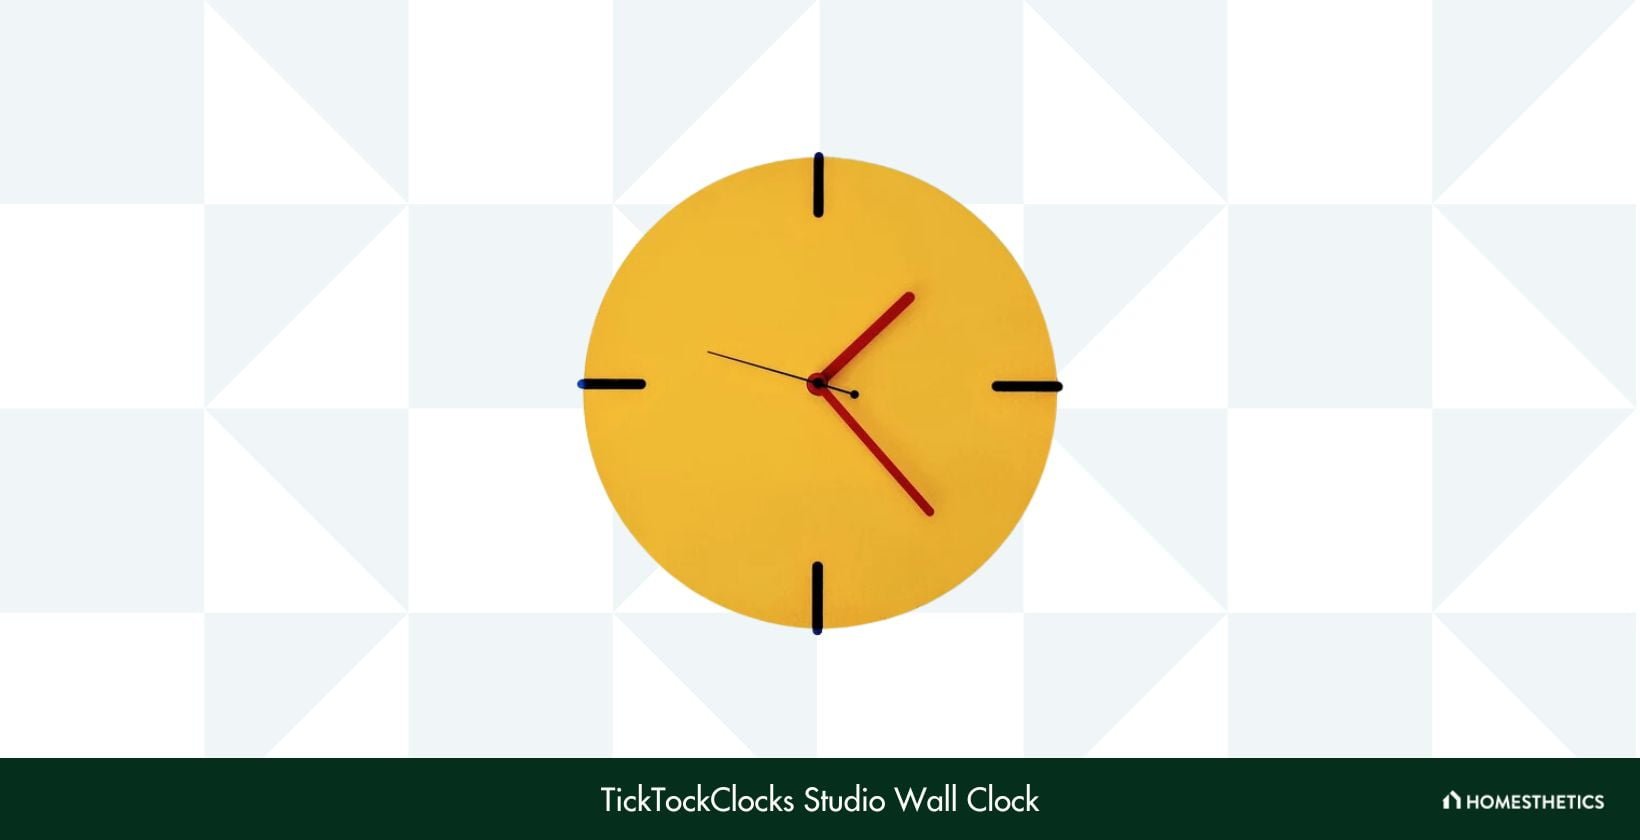 TickTockClocks Studio Wall Clock